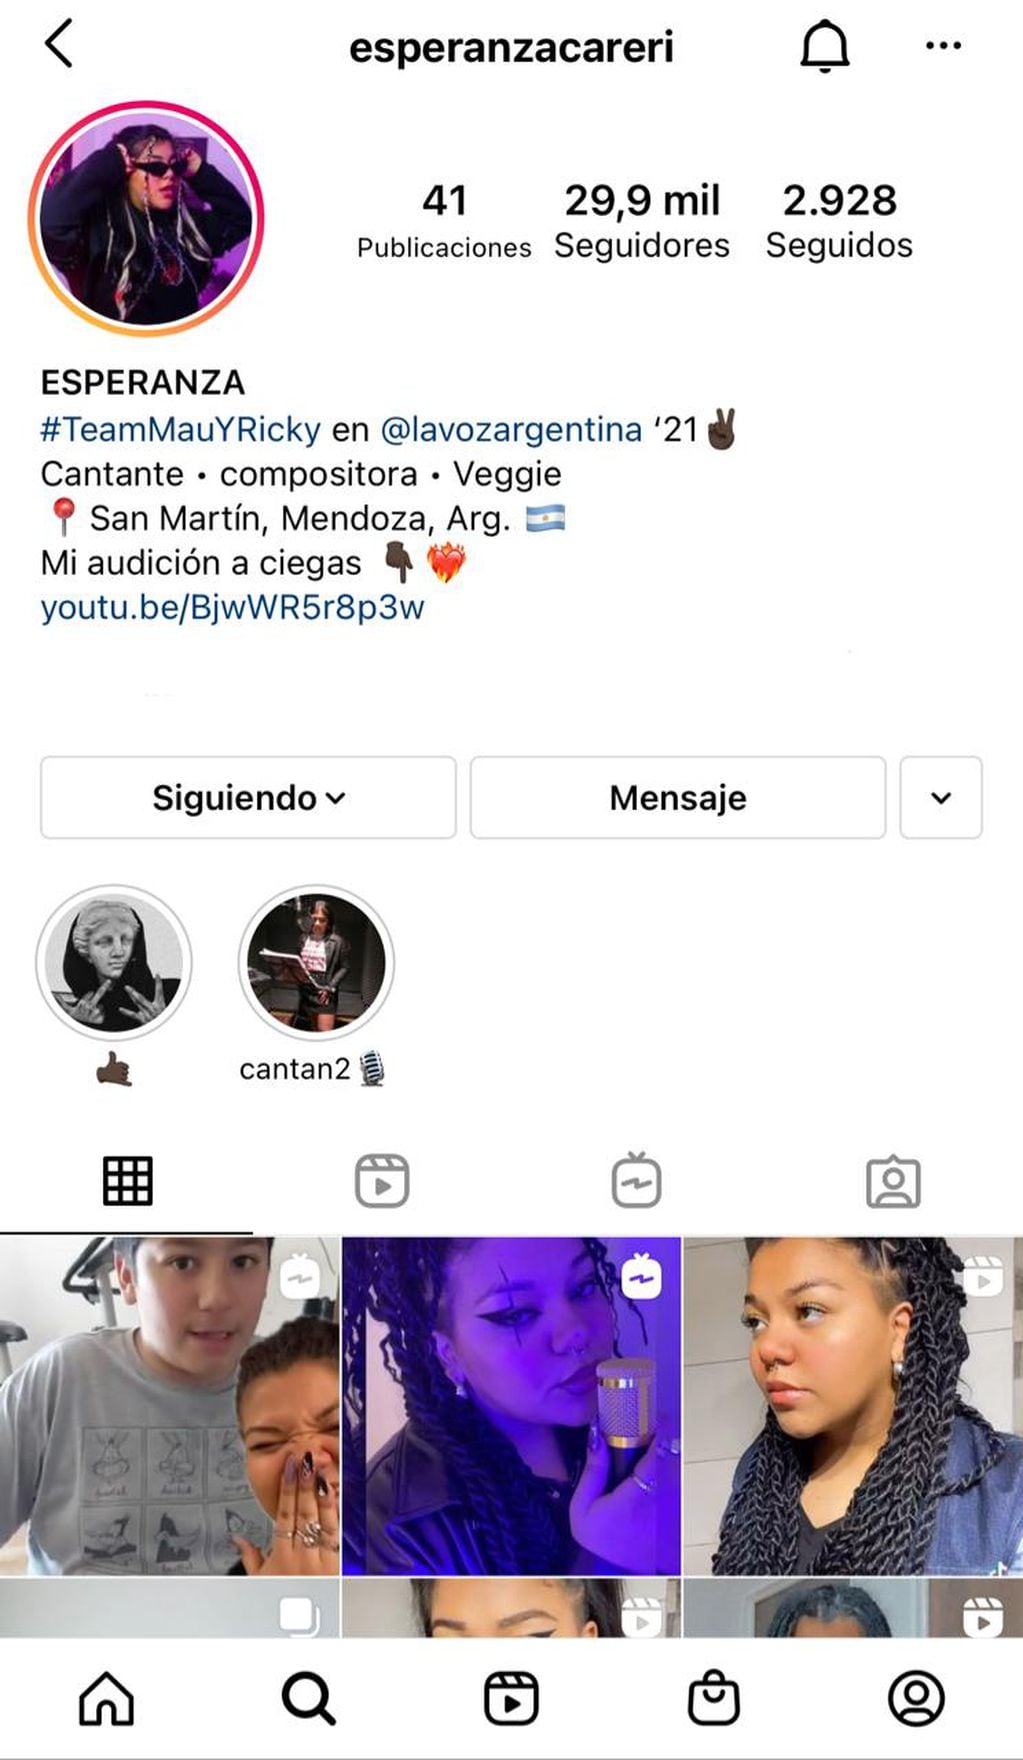 El perfil de Esperanza Careri. 